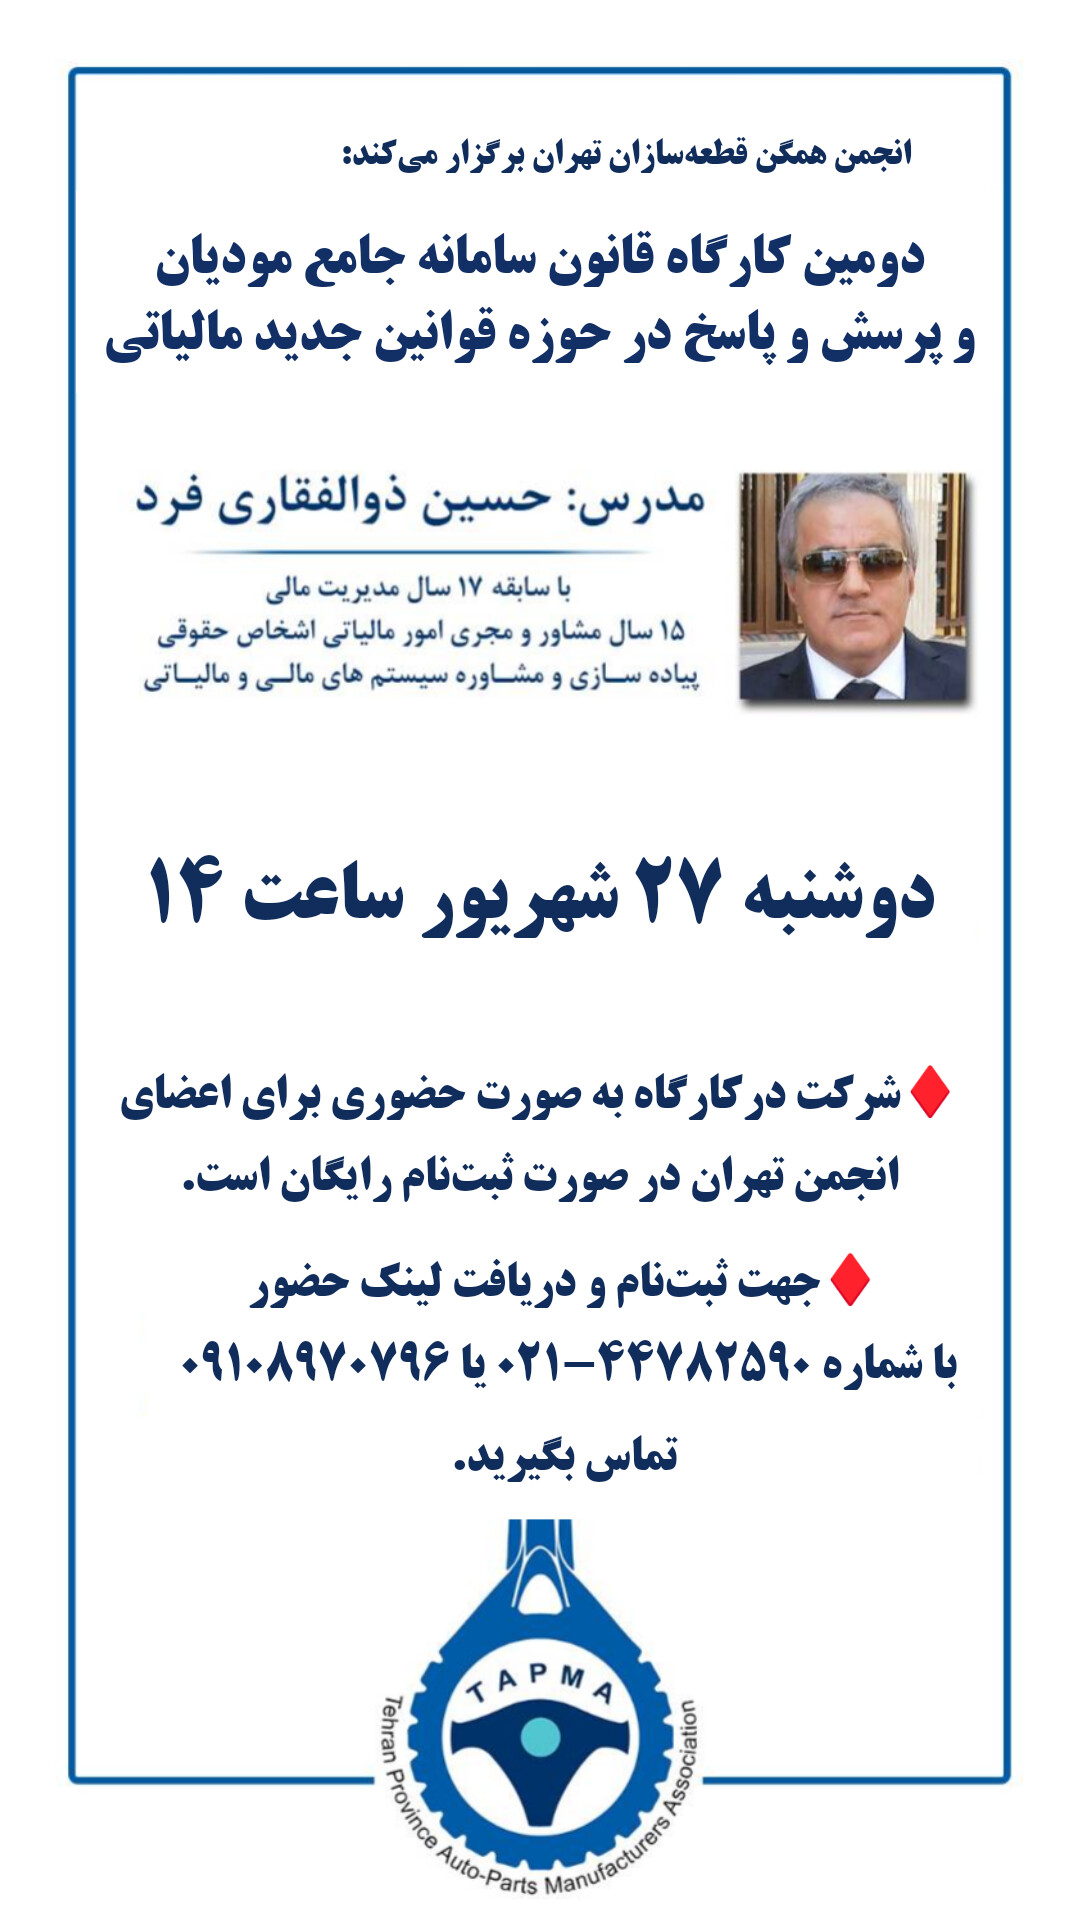 دومین کارگاه قانون سامانه مودیان مالیاتی و پرسش و پاسخ در این حوزه در انجمن قطعه سازان تهران